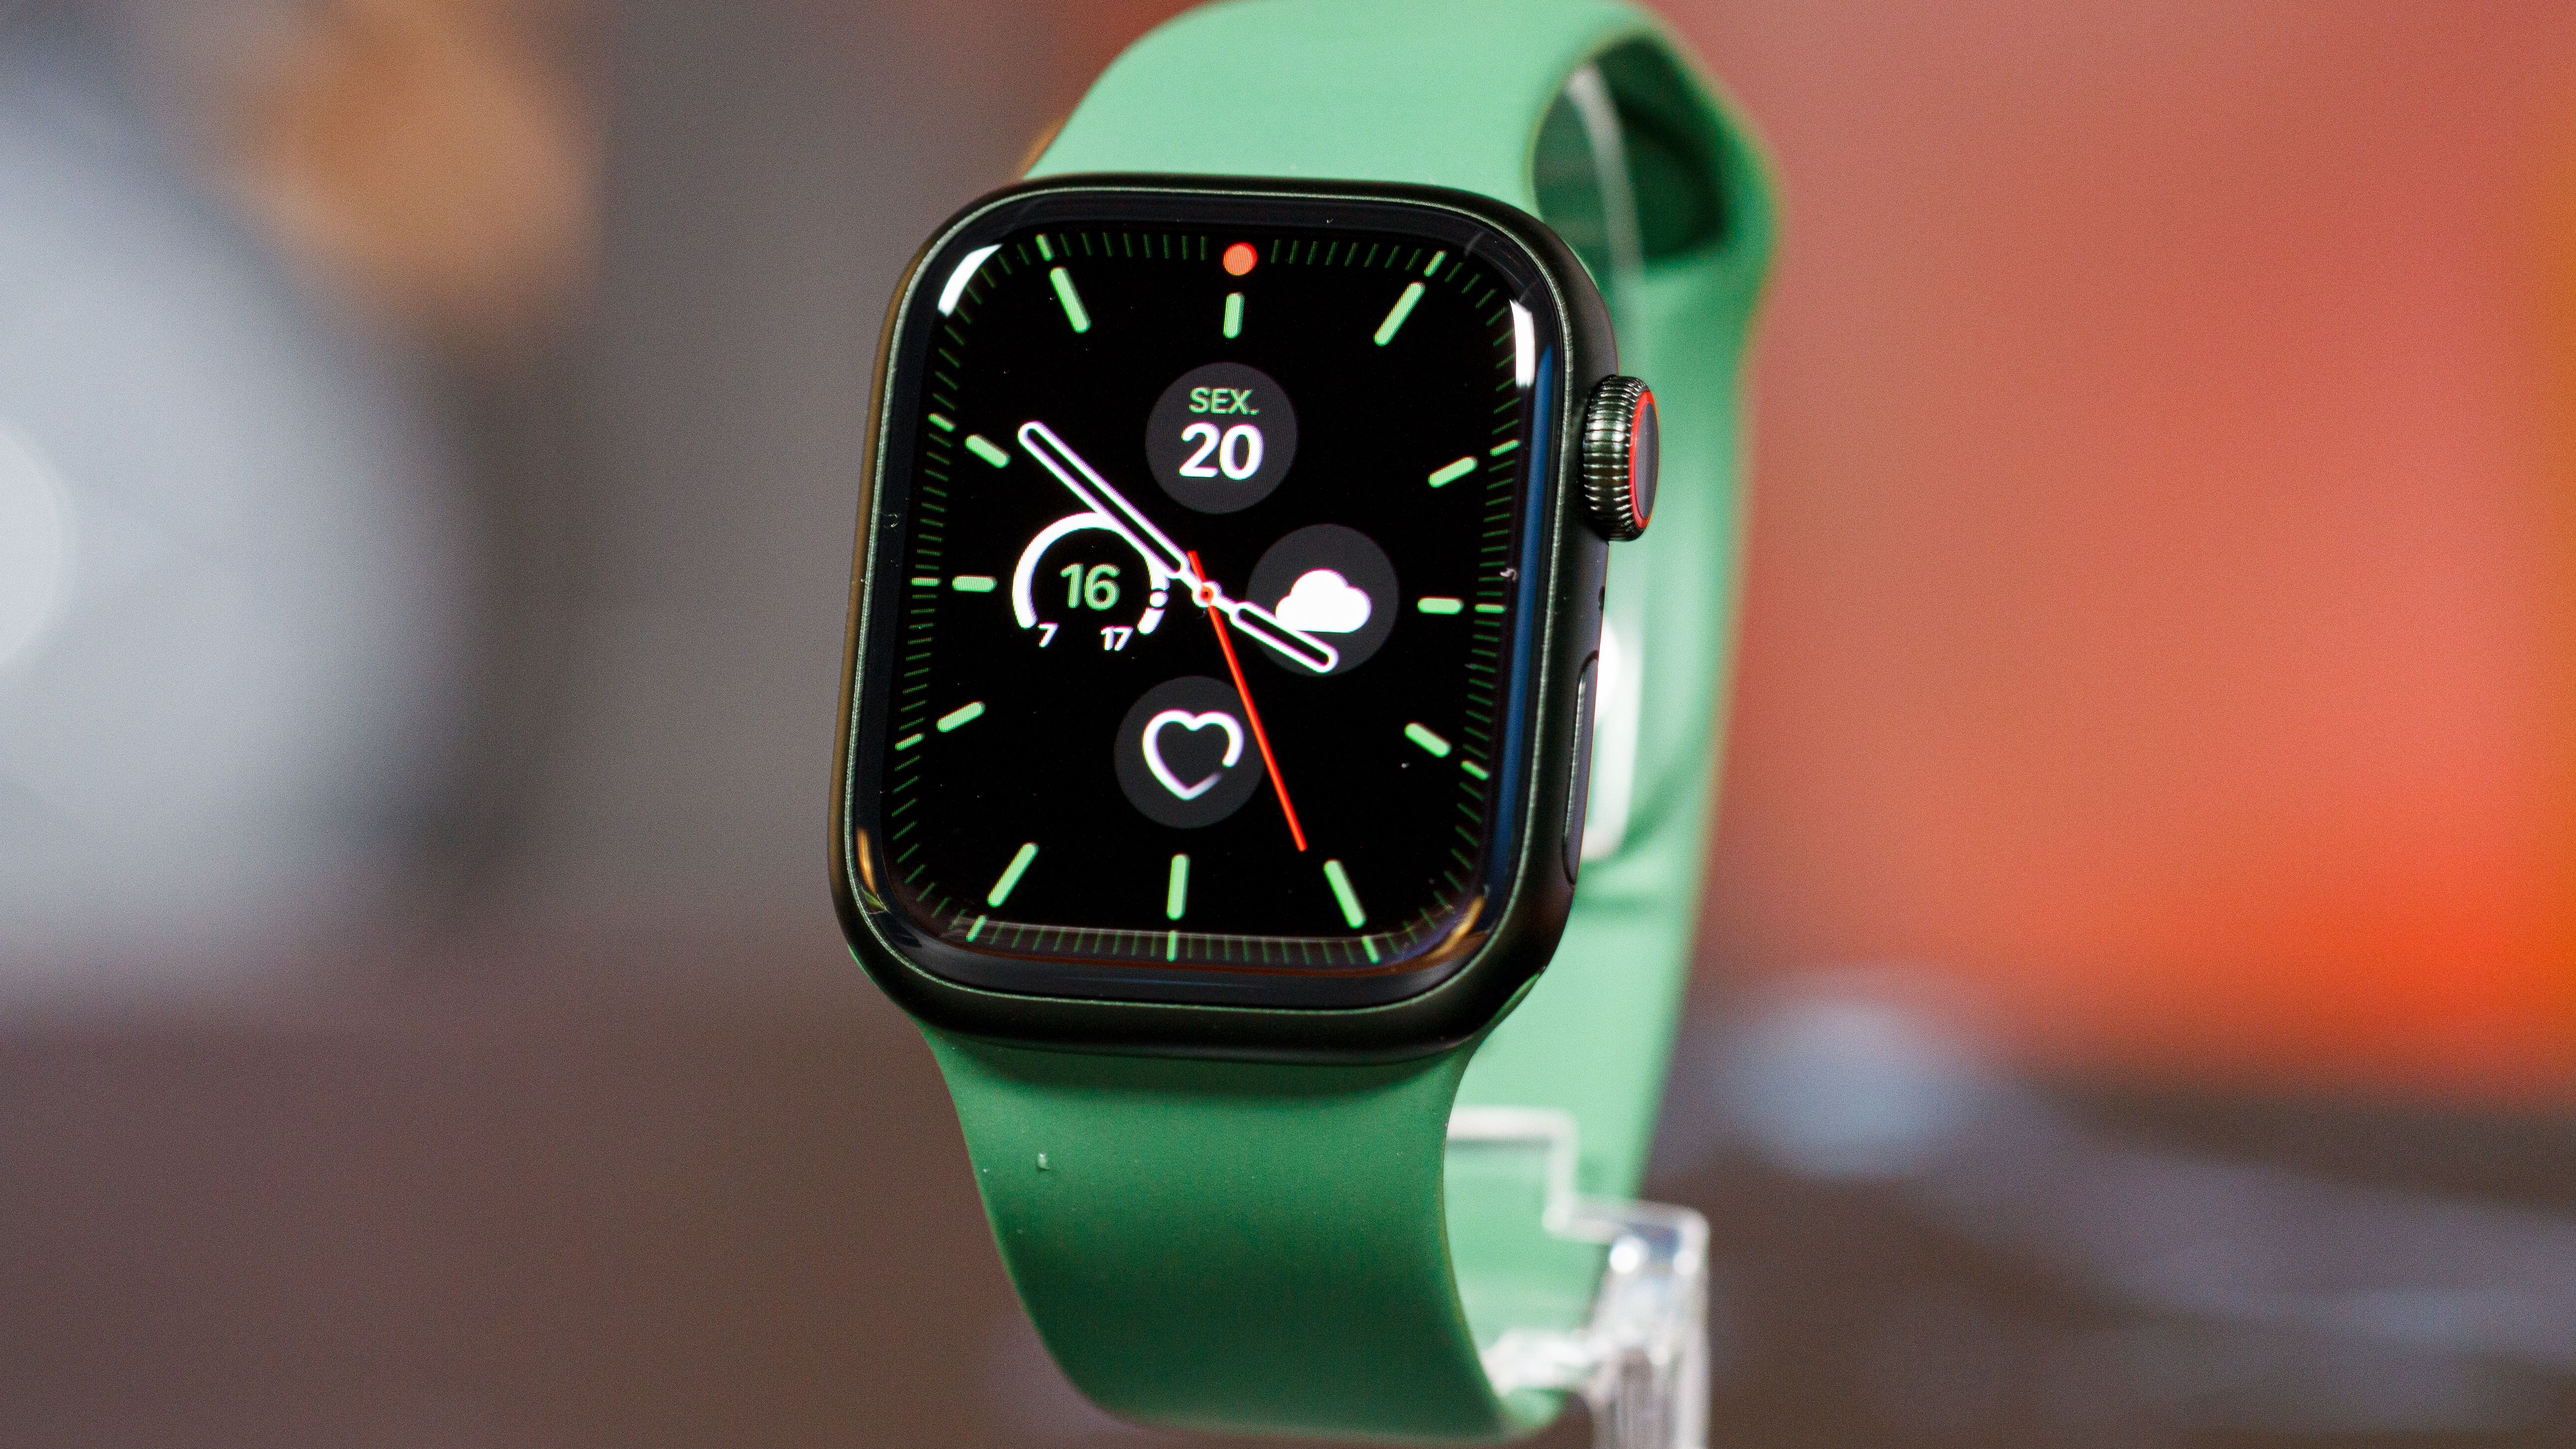 Spotify renova aplicativo do Apple Watch para ficar mais parecido com  celulares - Canaltech